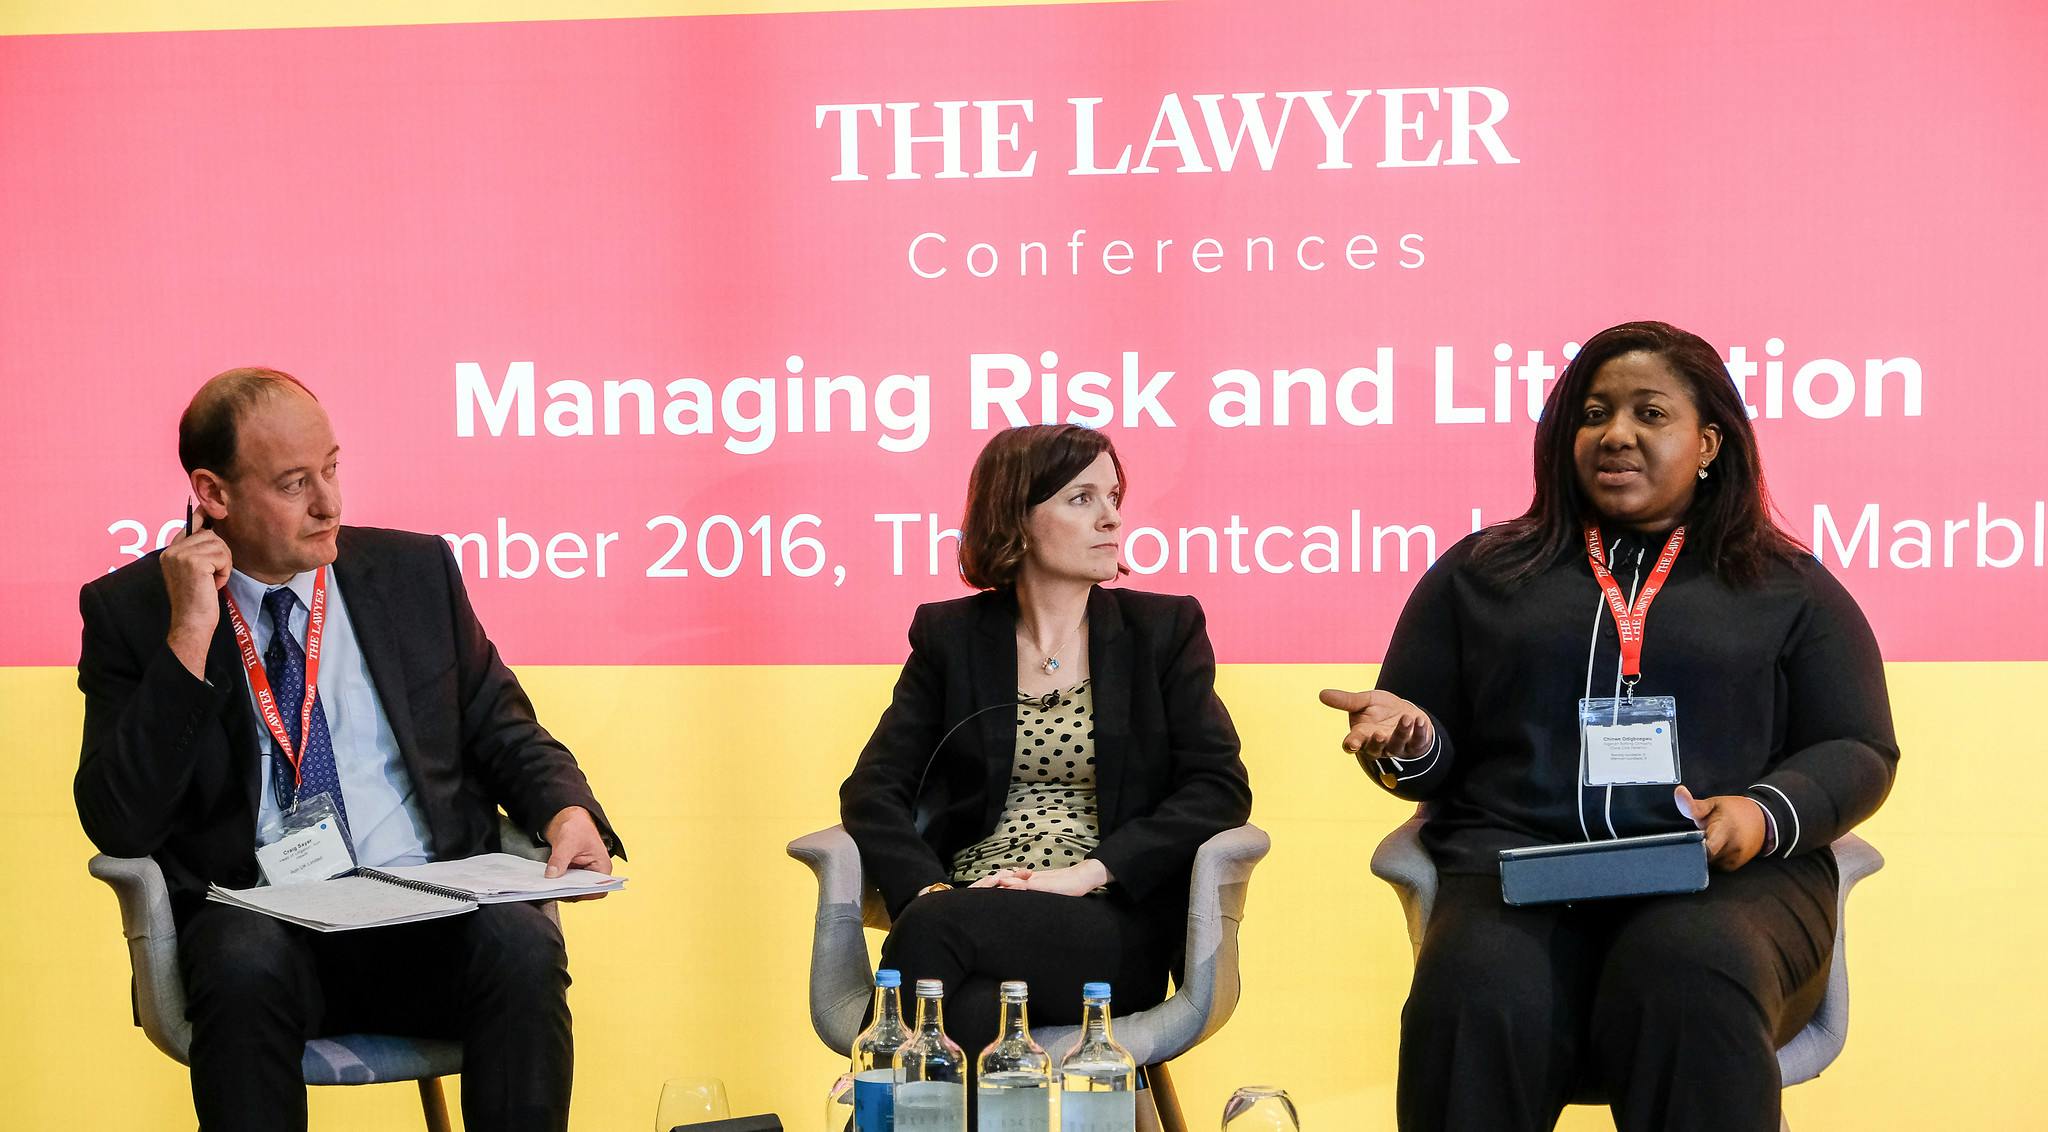 Managing Risk and Litigation